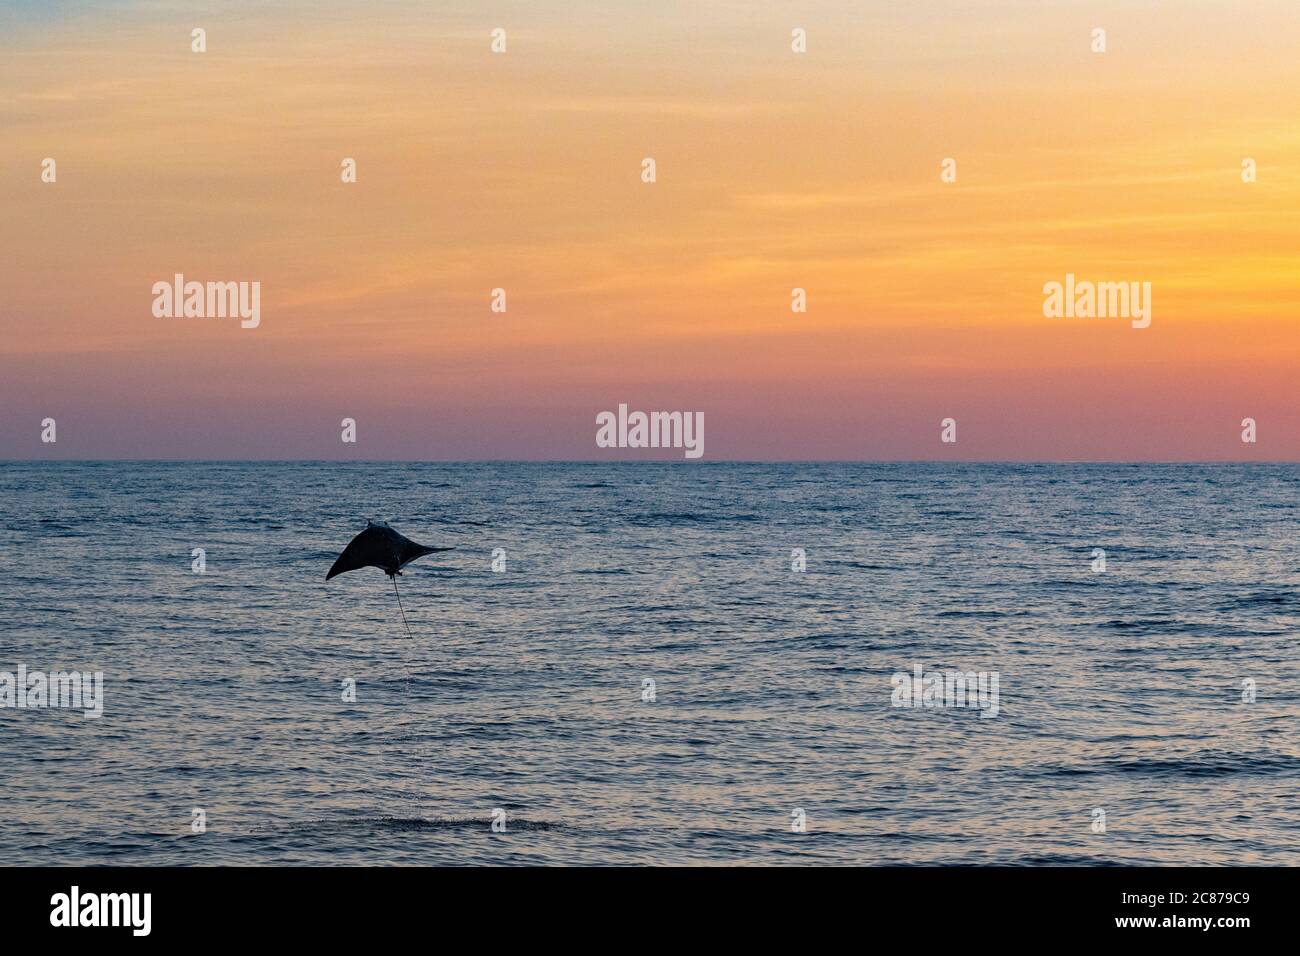 Mobula ray ou Devil ray, Mobula sp., sautant dans l'air au coucher du soleil, au large du sud du Costa Rica, en Amérique centrale ( Océan Pacifique oriental ) Banque D'Images